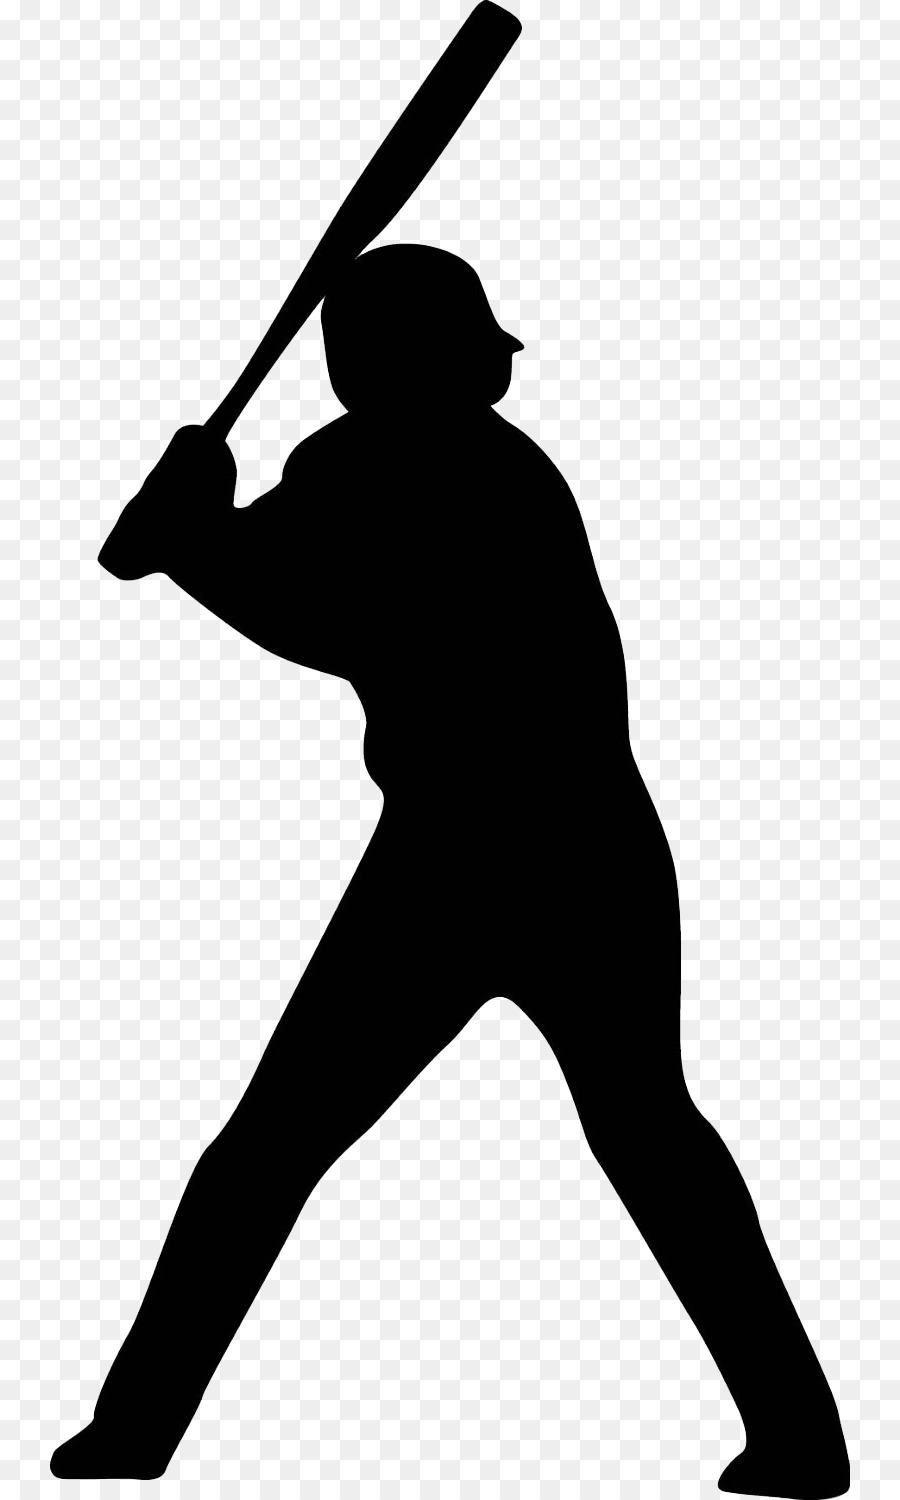 MLB Baseball player Batting - Vector stick figure baseball player png ...